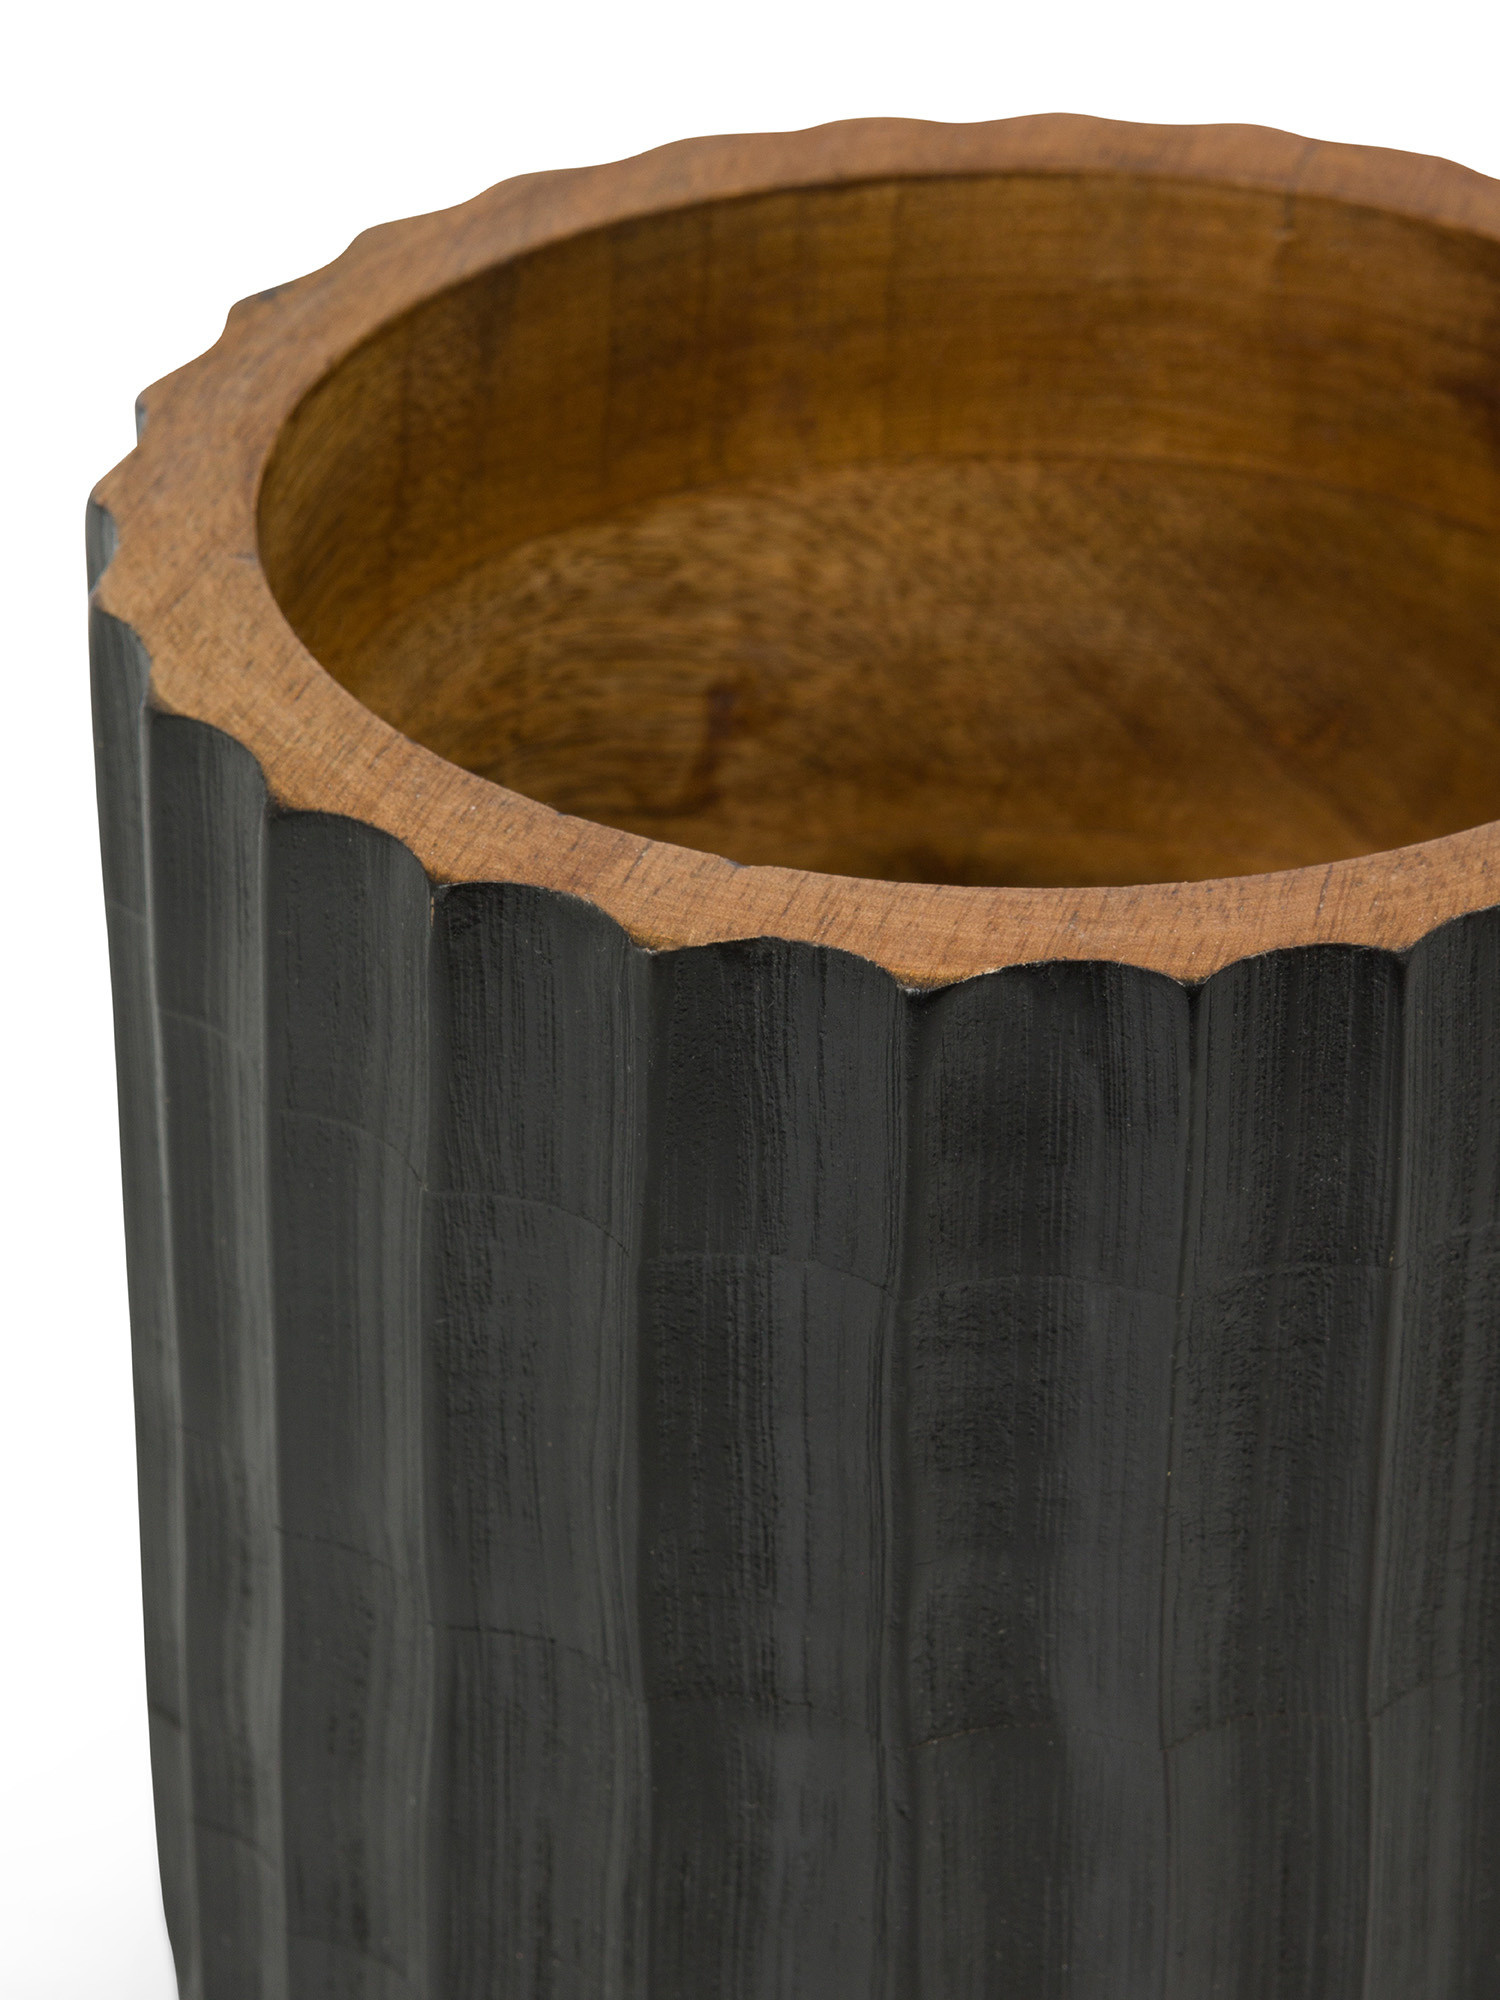 Carved mango wood vase cover, Black, large image number 1